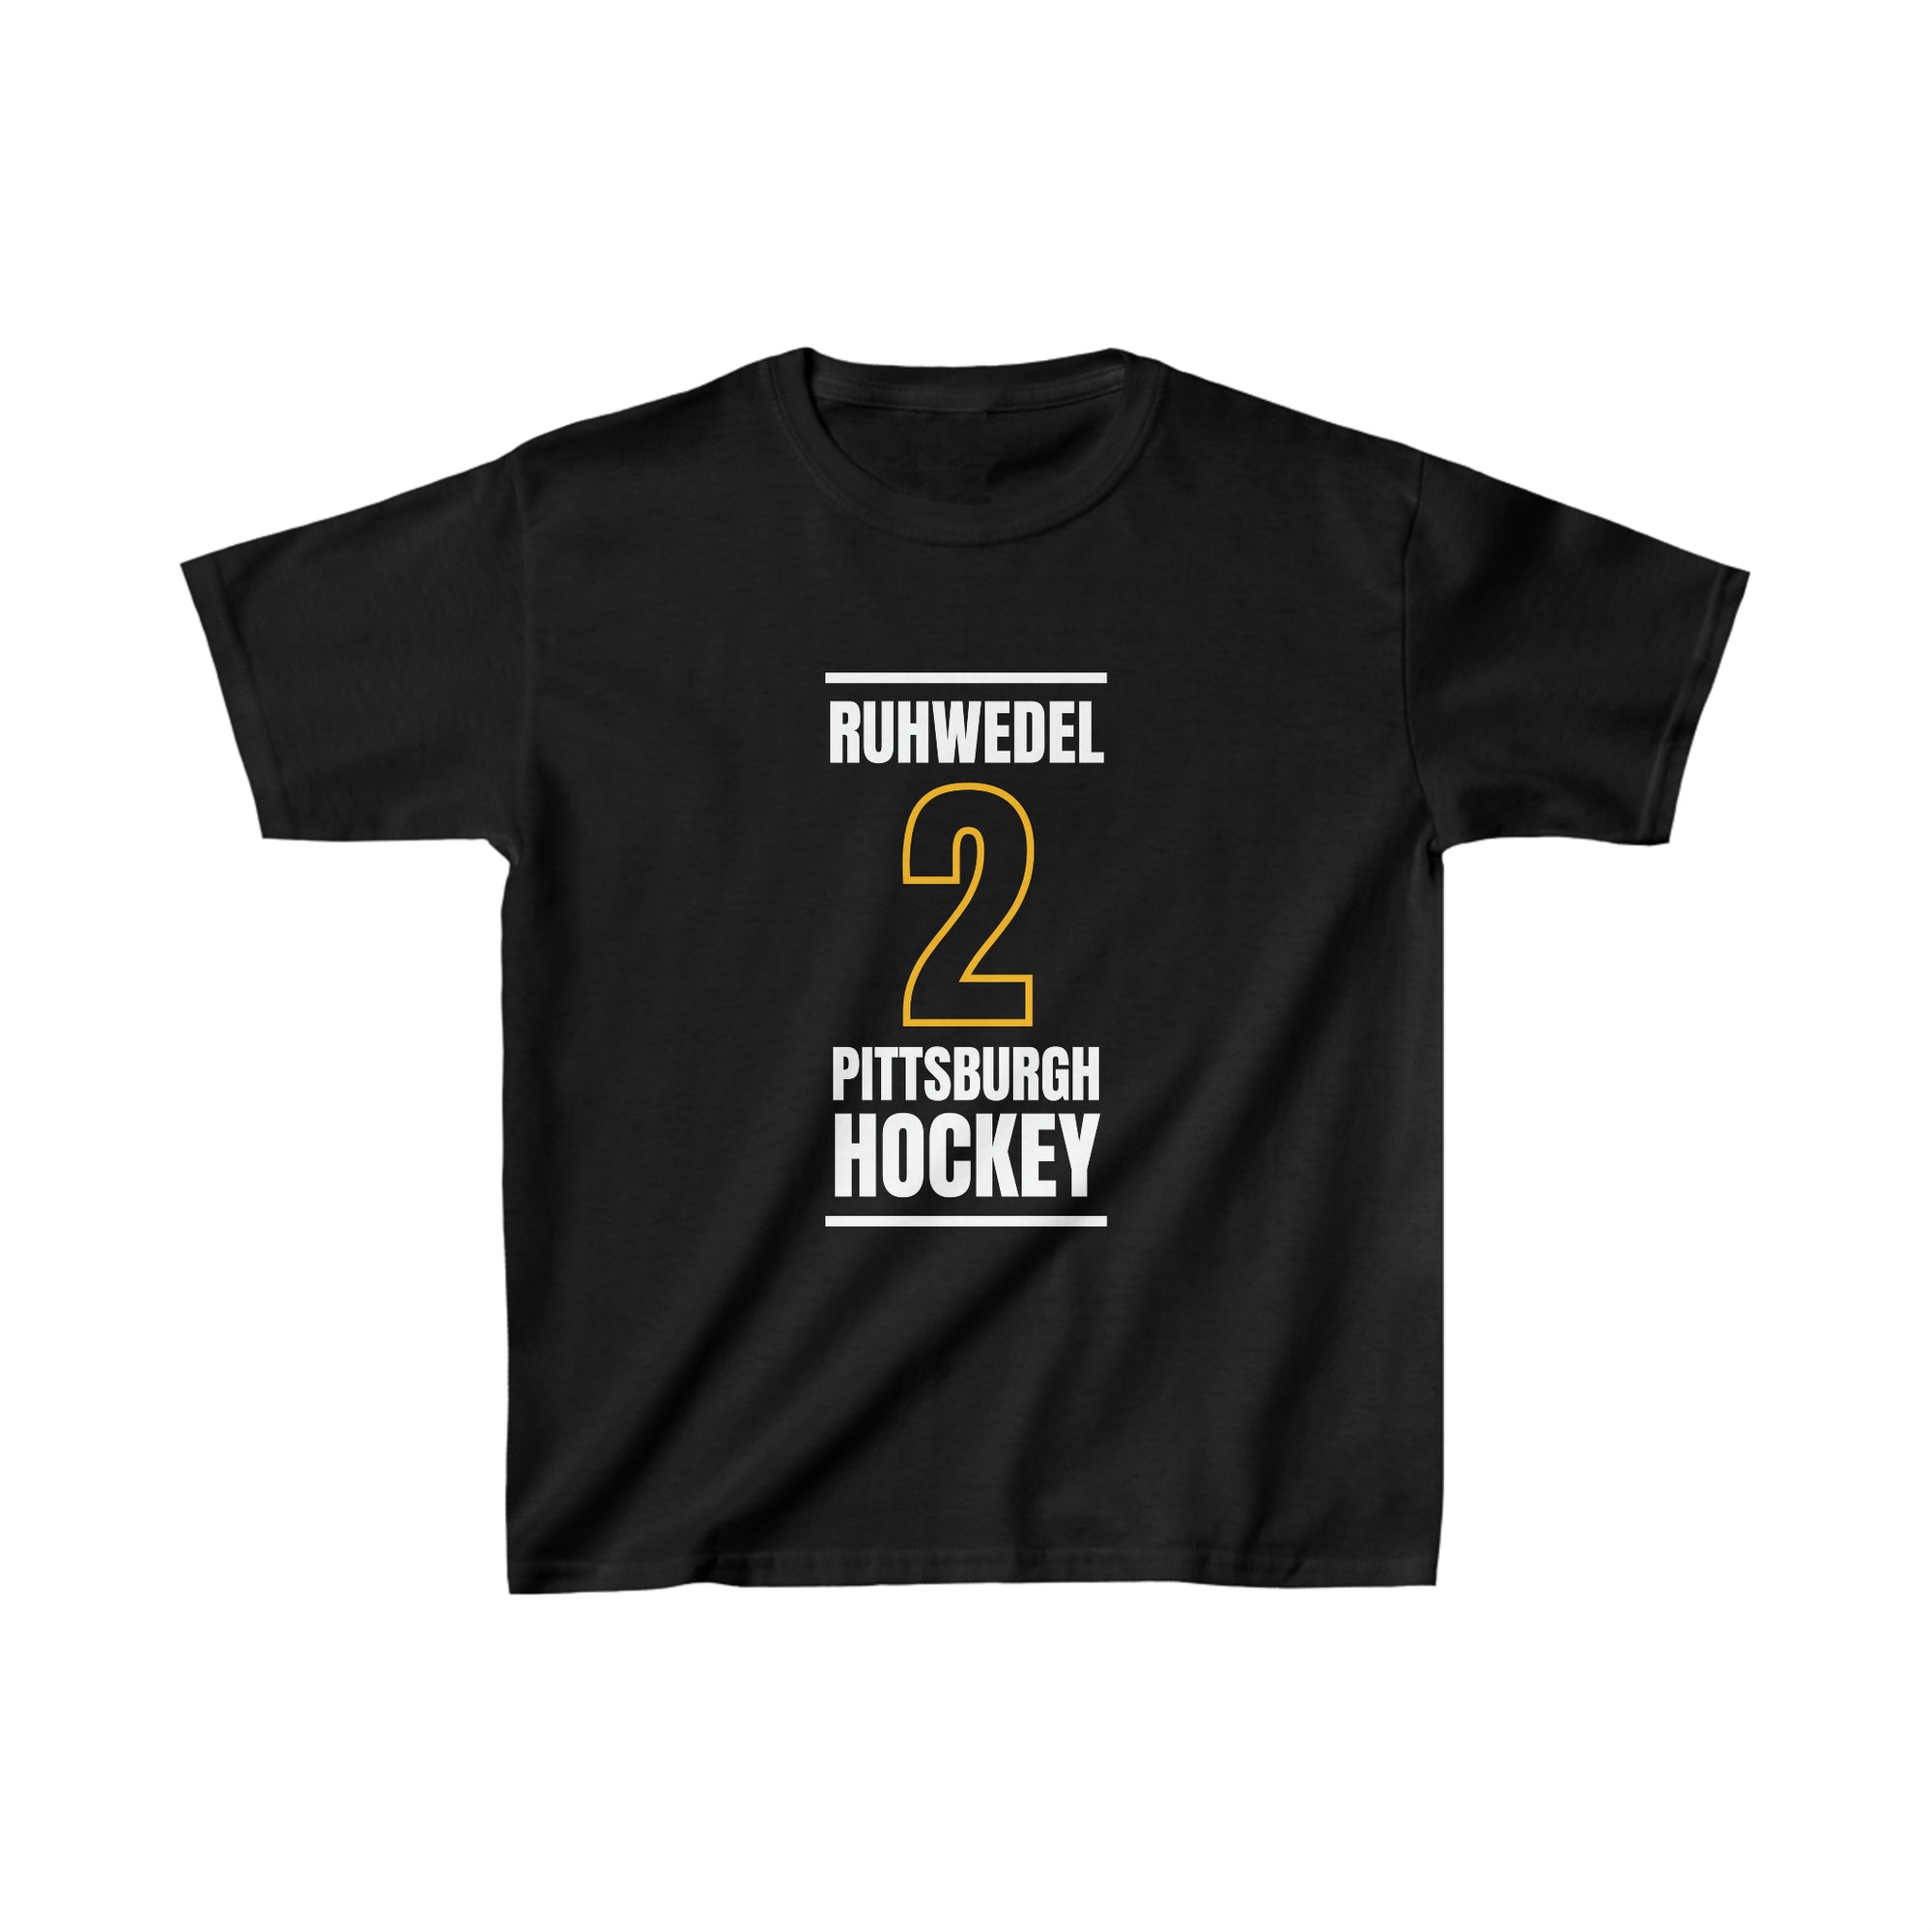 Ruhwedel 2 Pittsburgh Hockey Black Vertical Design Kids Tee